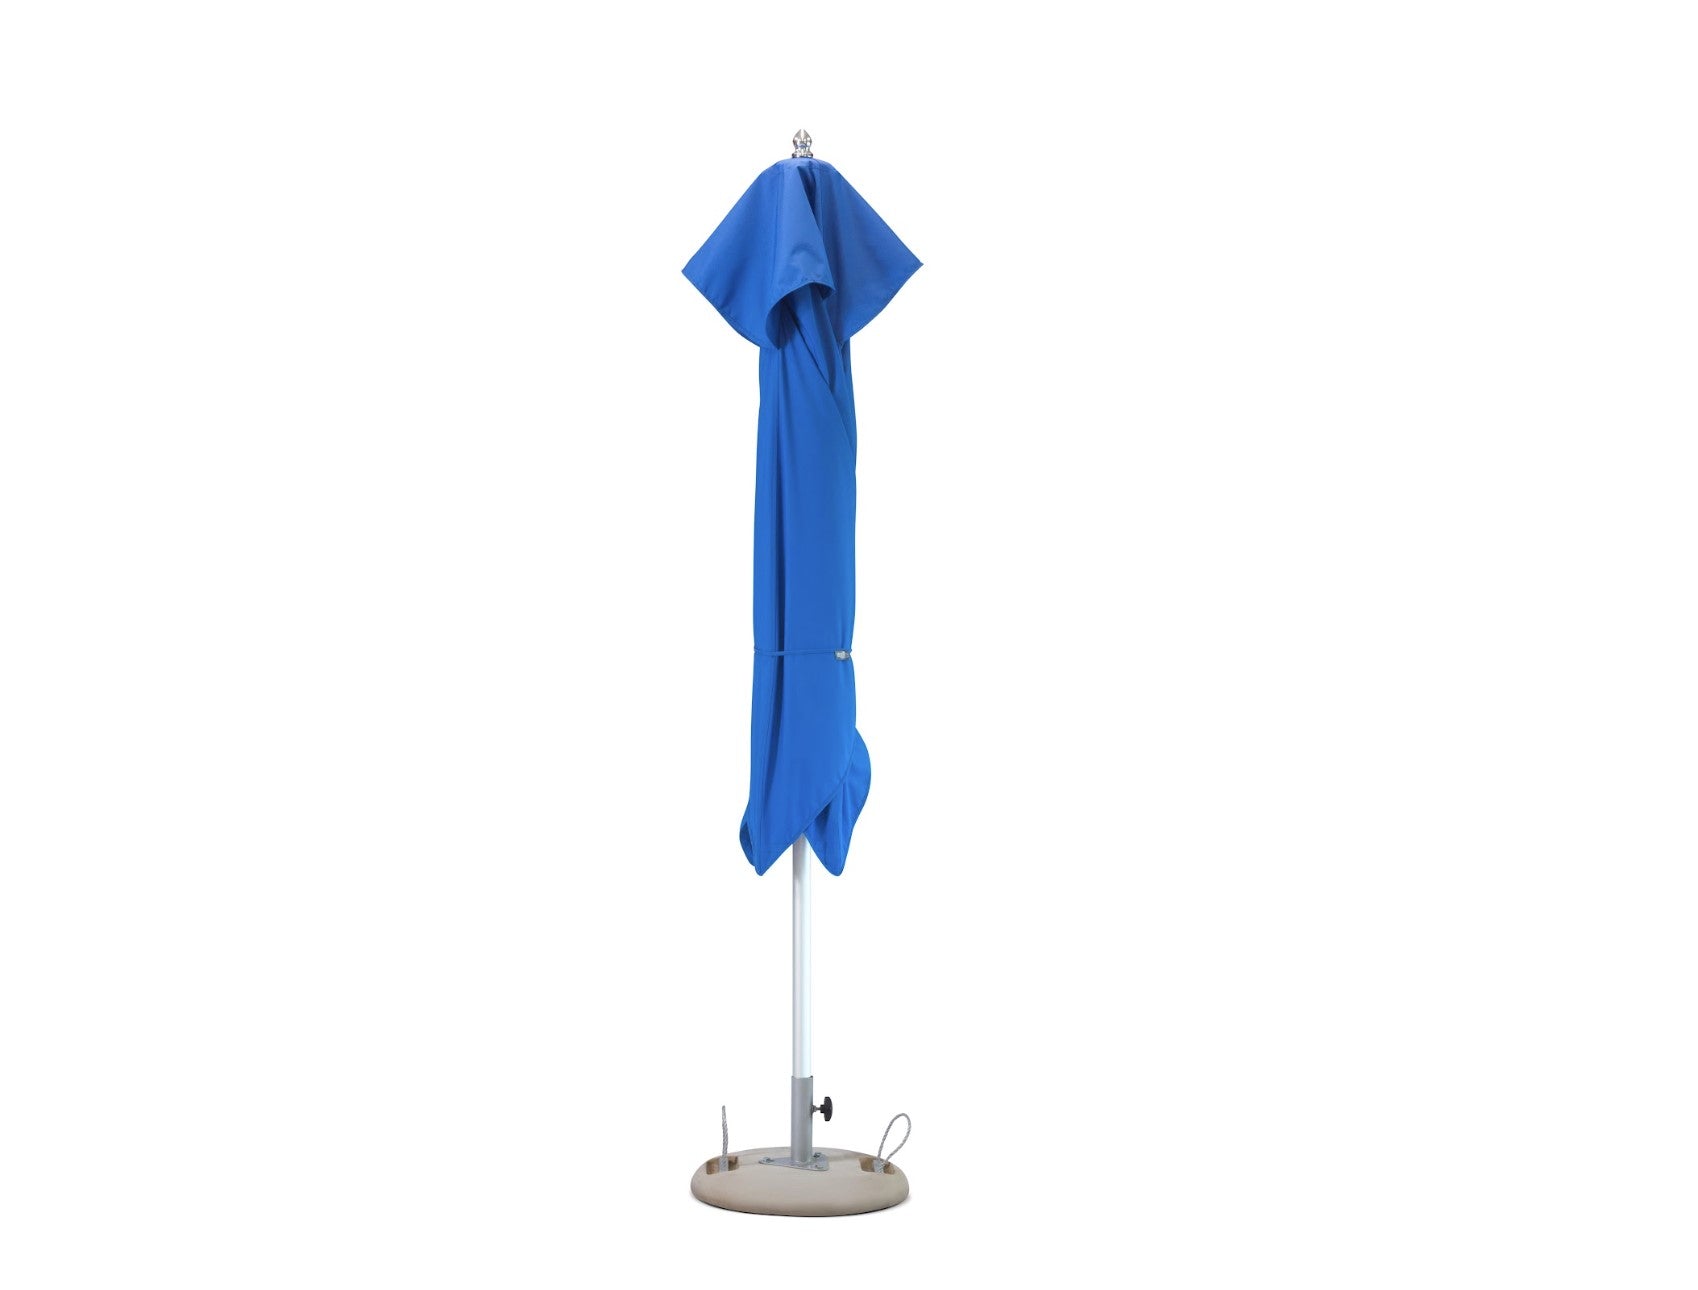 8' Blue Polyester Square Market Patio Umbrella